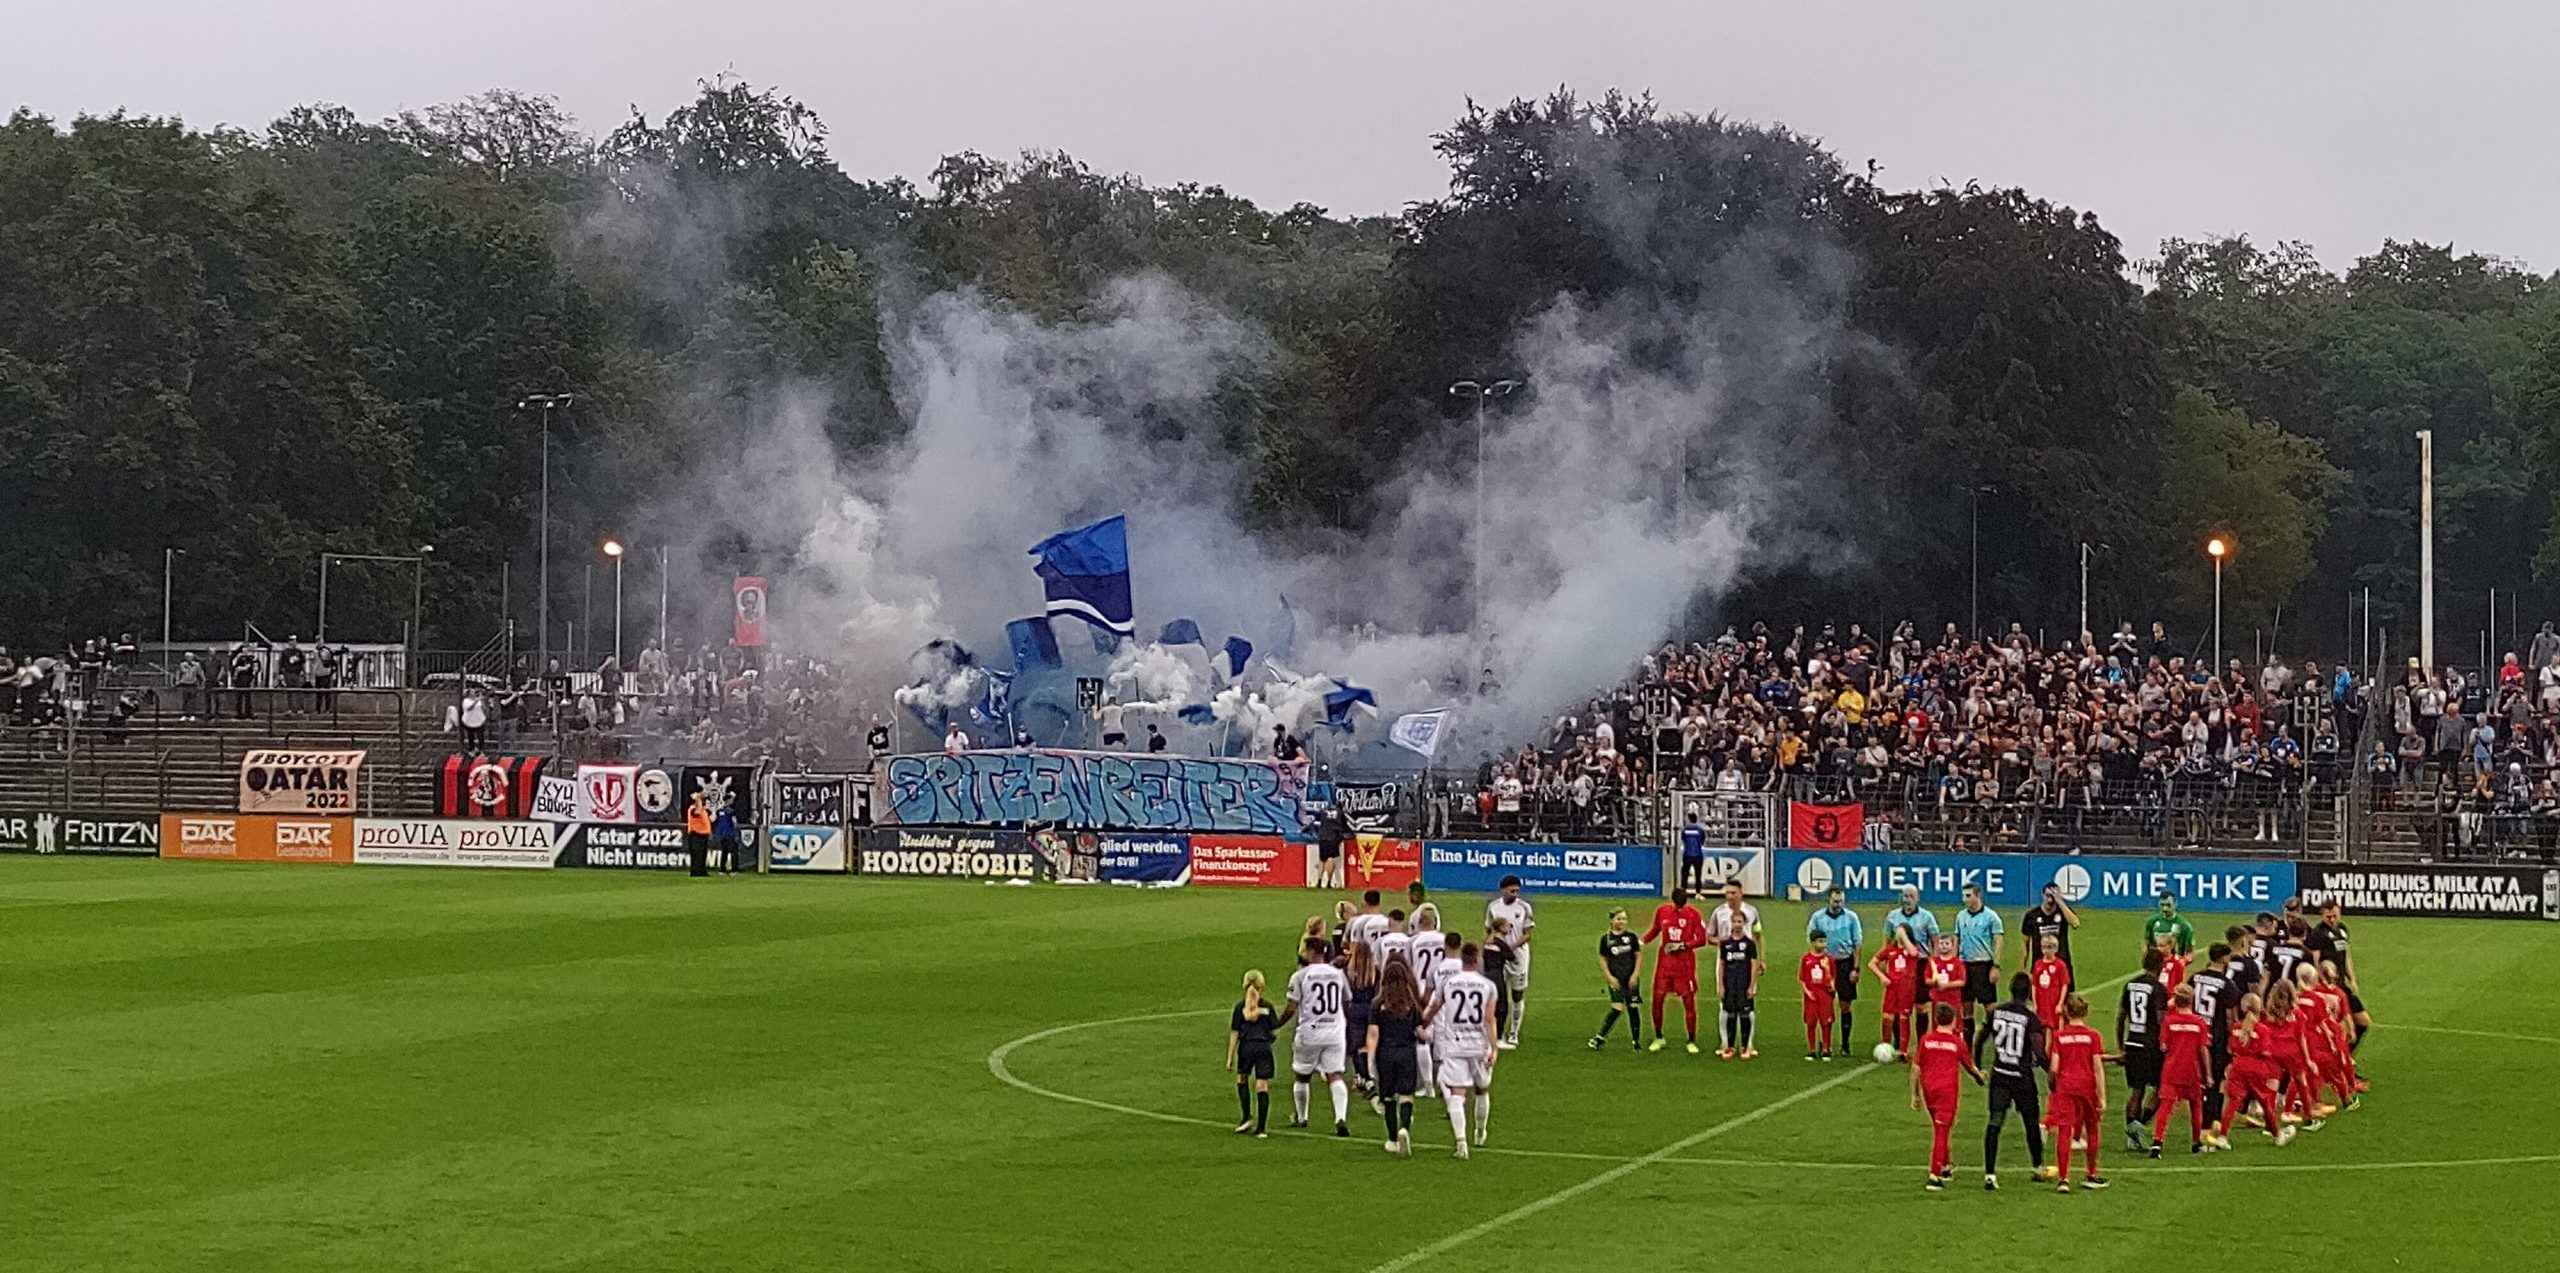 Blick in ein Fußballstadion, im Vordergrund nehmen zwei Mannschaften Aufstellung im Hintergrund weht von einer Tribüne blau-weißer Rauch herüber, dazwischen Fahnen und an der Bande ein Banner "Spitzenreiter"